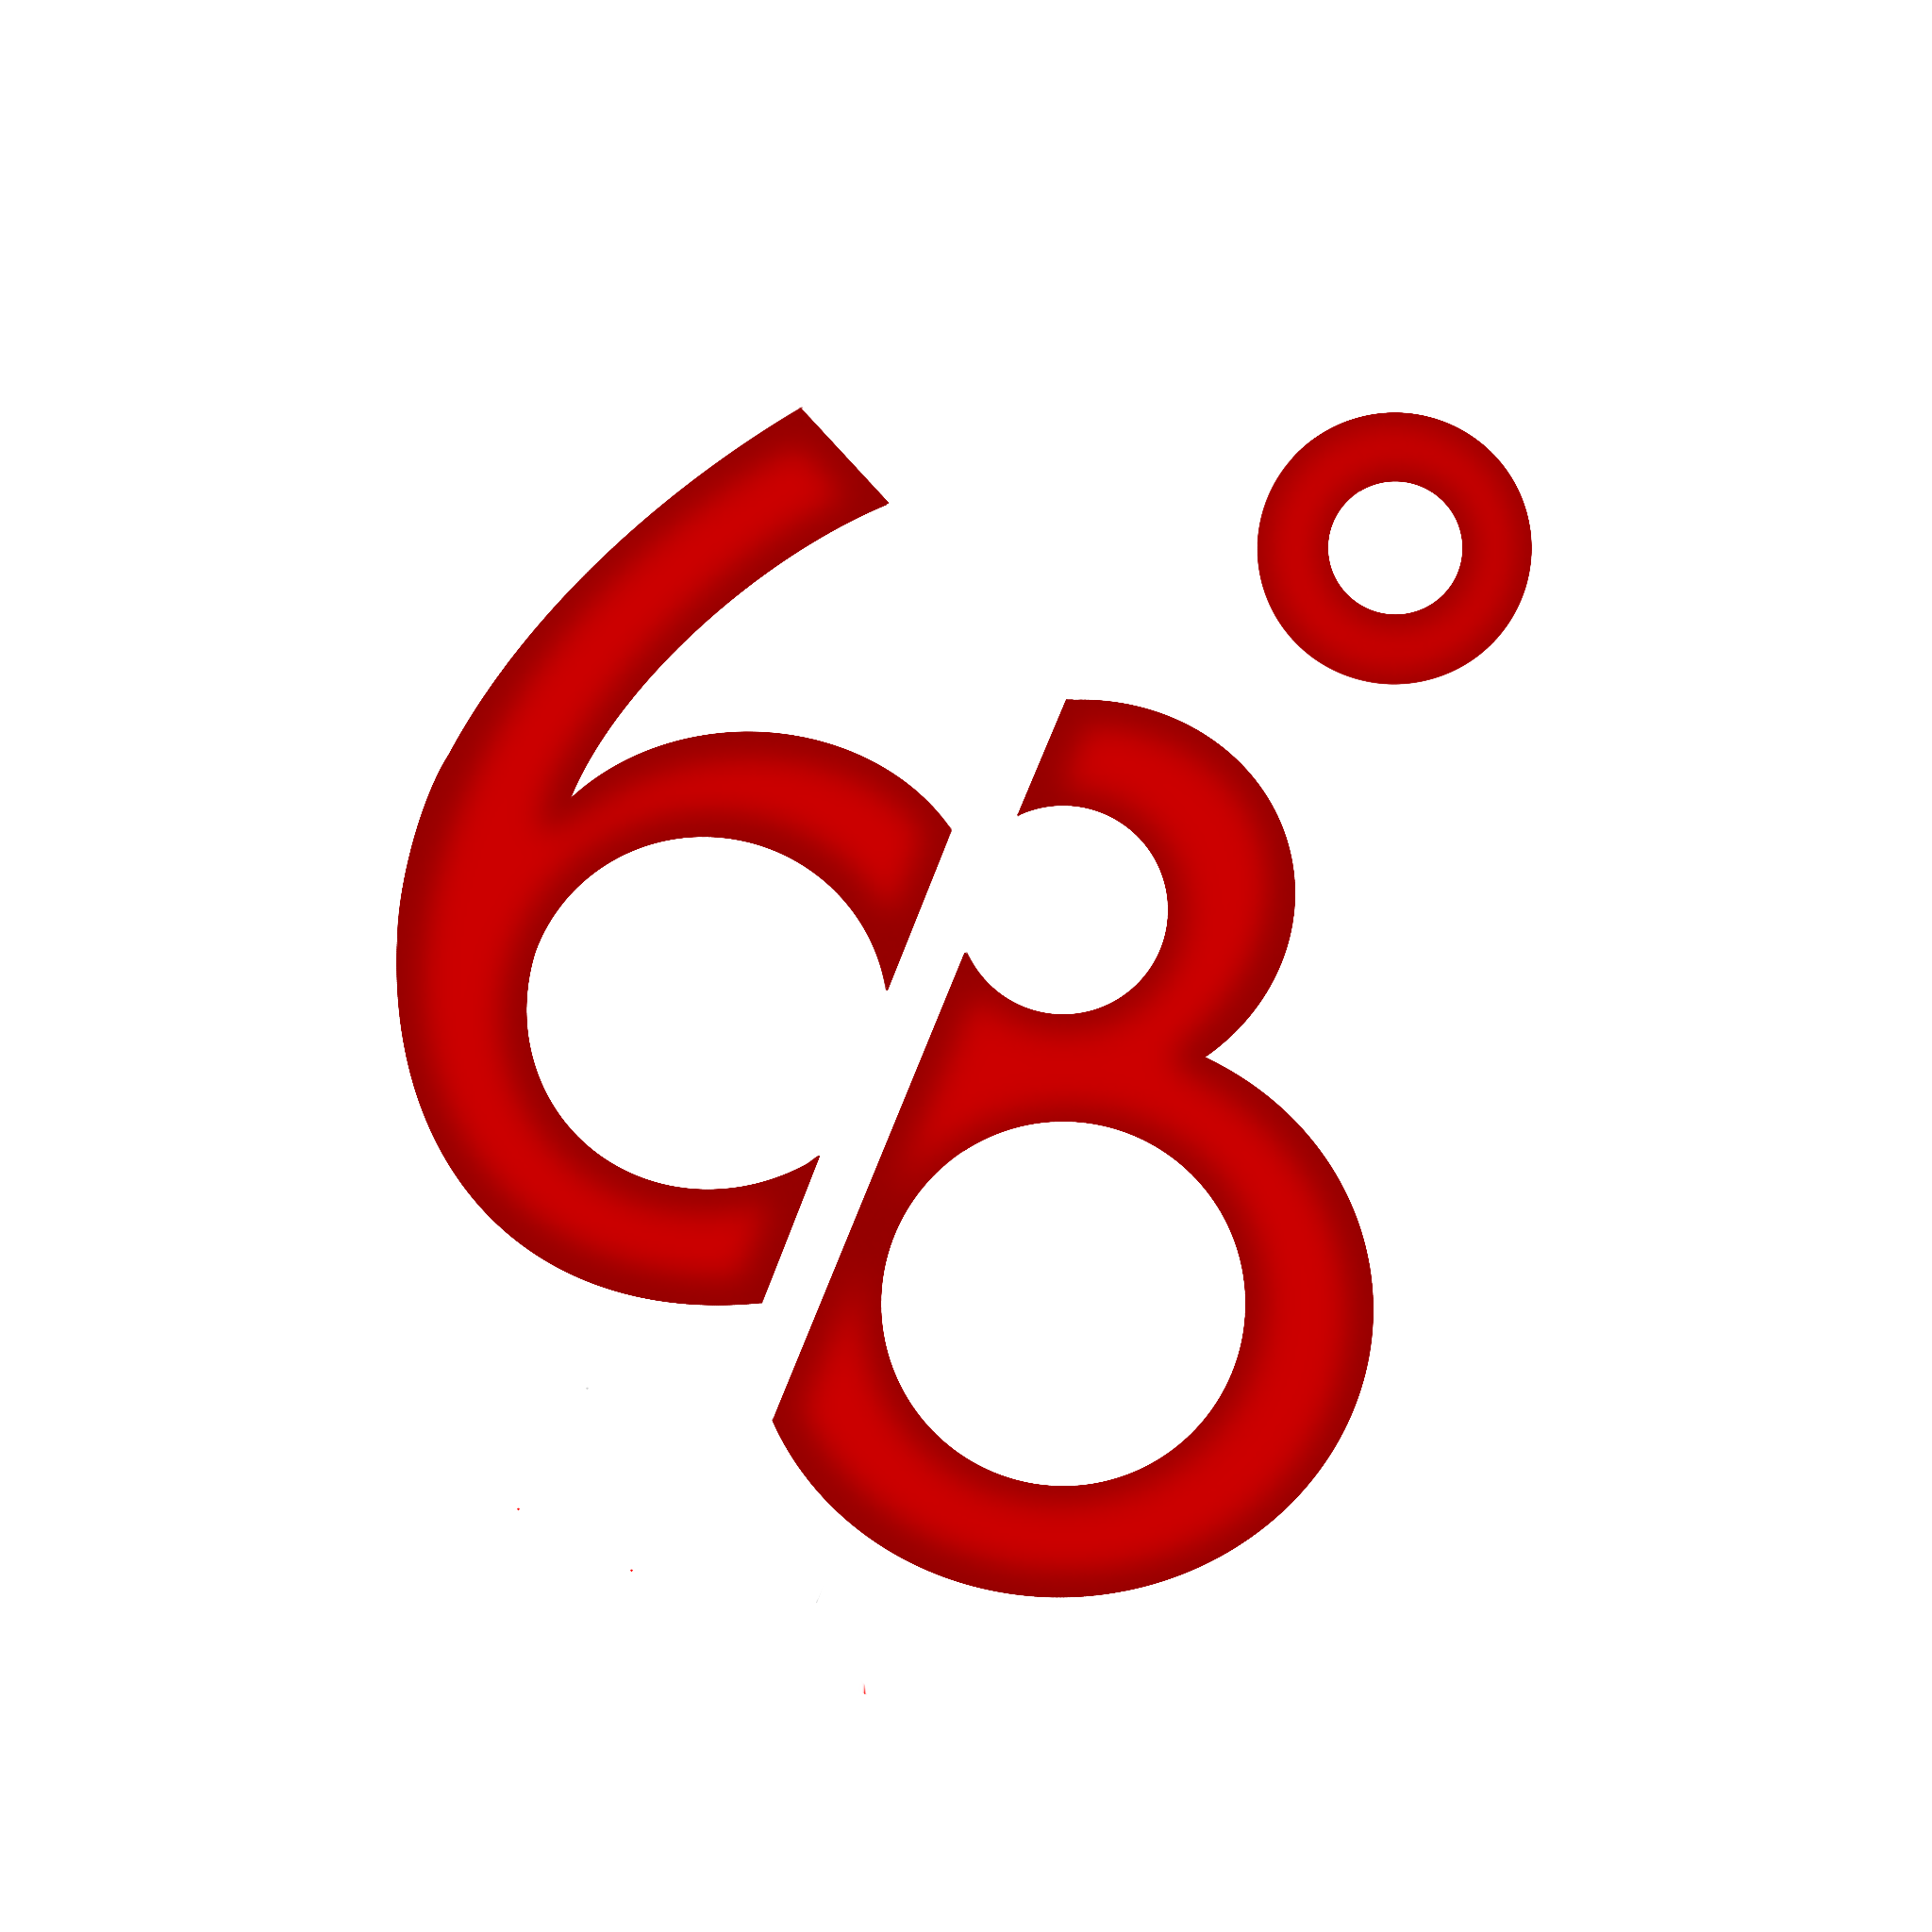 68°